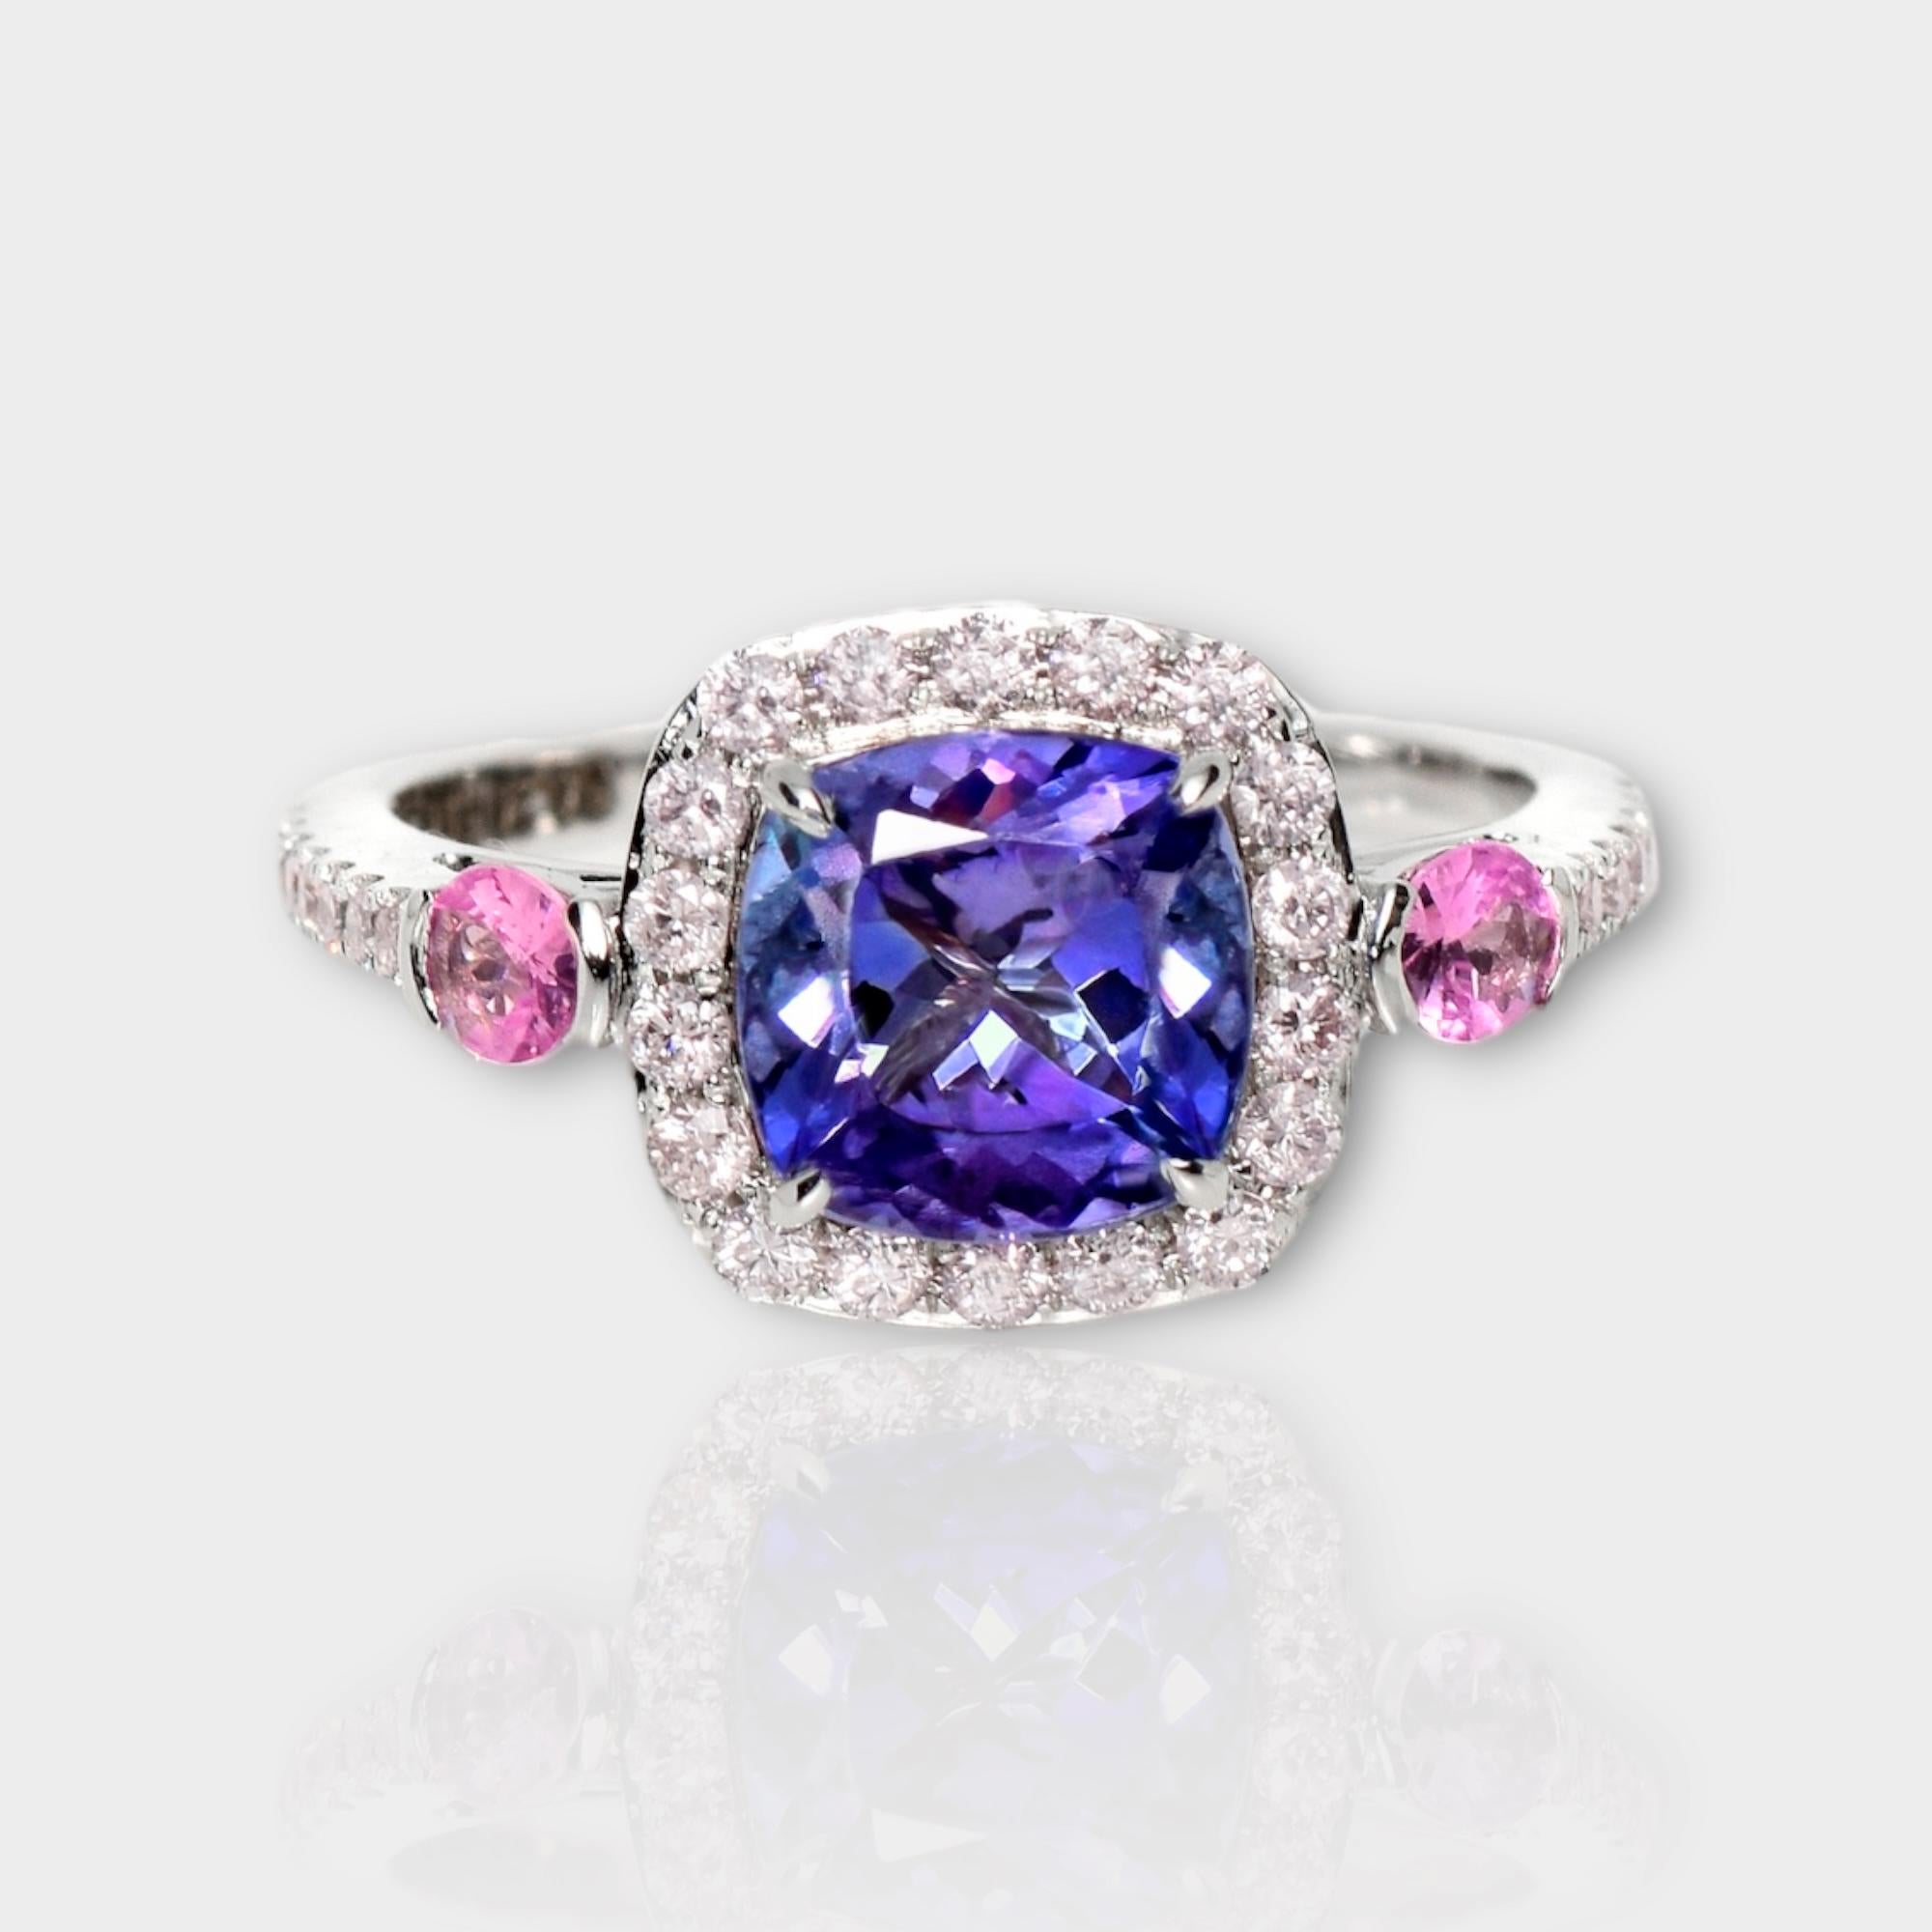 *IGI 14K 1.87 ct Tanzanite&Diamant rose Bague de fiançailles antique de style Art Déco*.
La tanzanite naturelle d'un violet bleuté intense, pesant 1,87 ct, est la pierre centrale entourée de diamants roses naturels pesant 0,41 ct sur le bracelet en